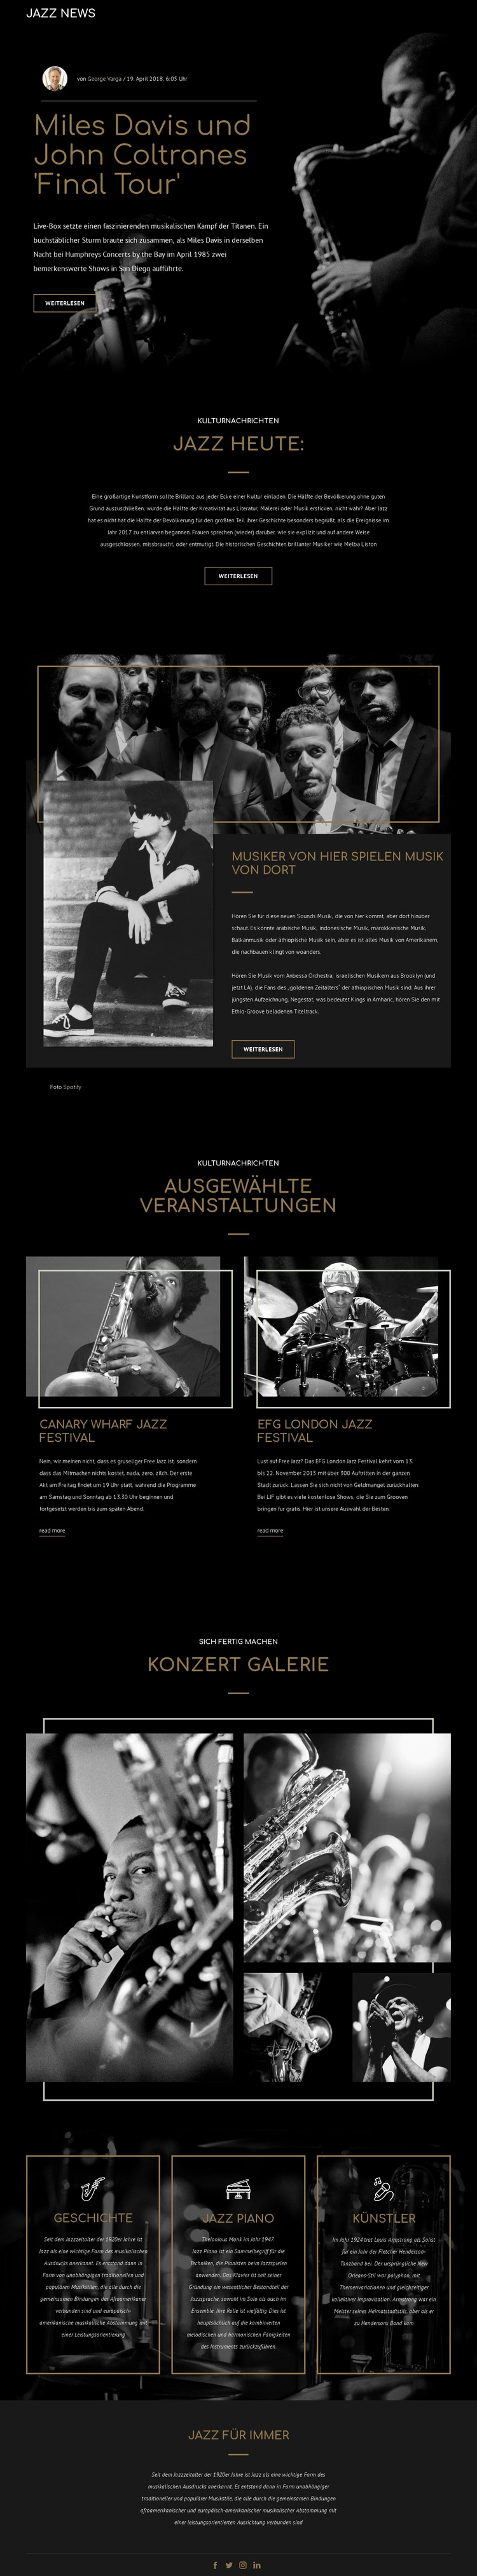 Legengs der Jazzmusik Website-Vorlage